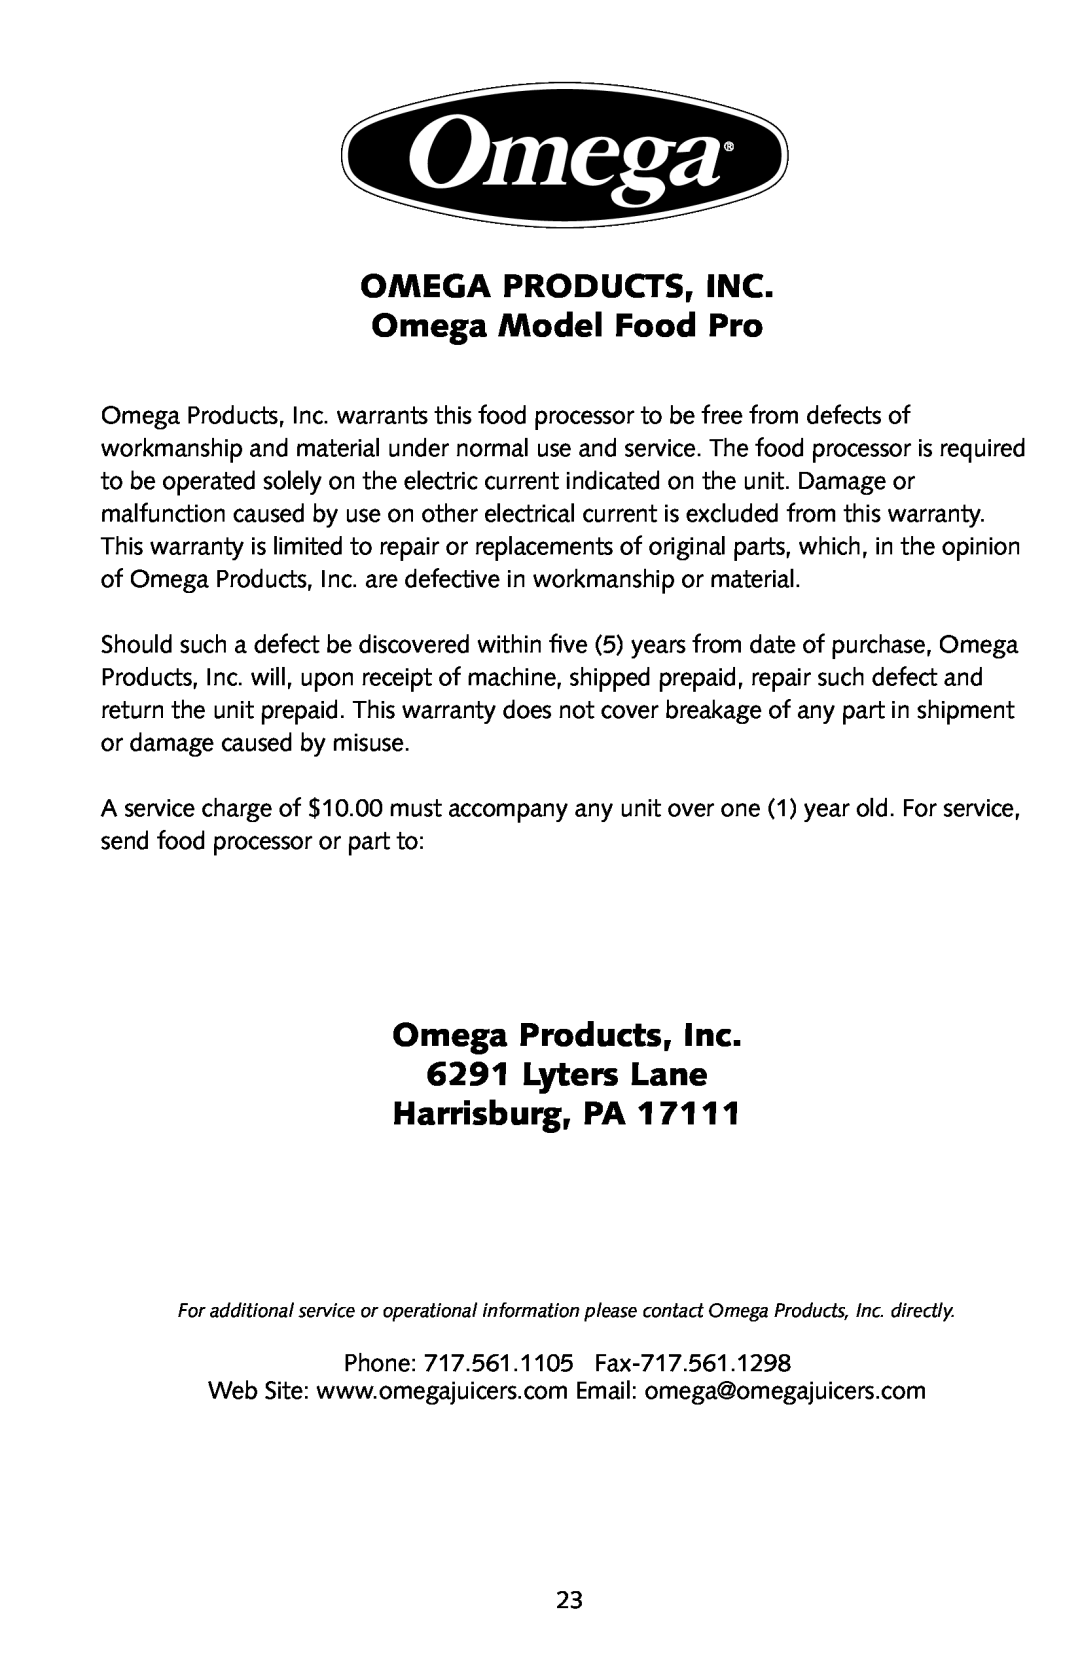 Omega FoodPro OMEGA PRODUCTS, INC Omega Model Food Pro, Omega Products, Inc 6291 Lyters Lane Harrisburg, PA 